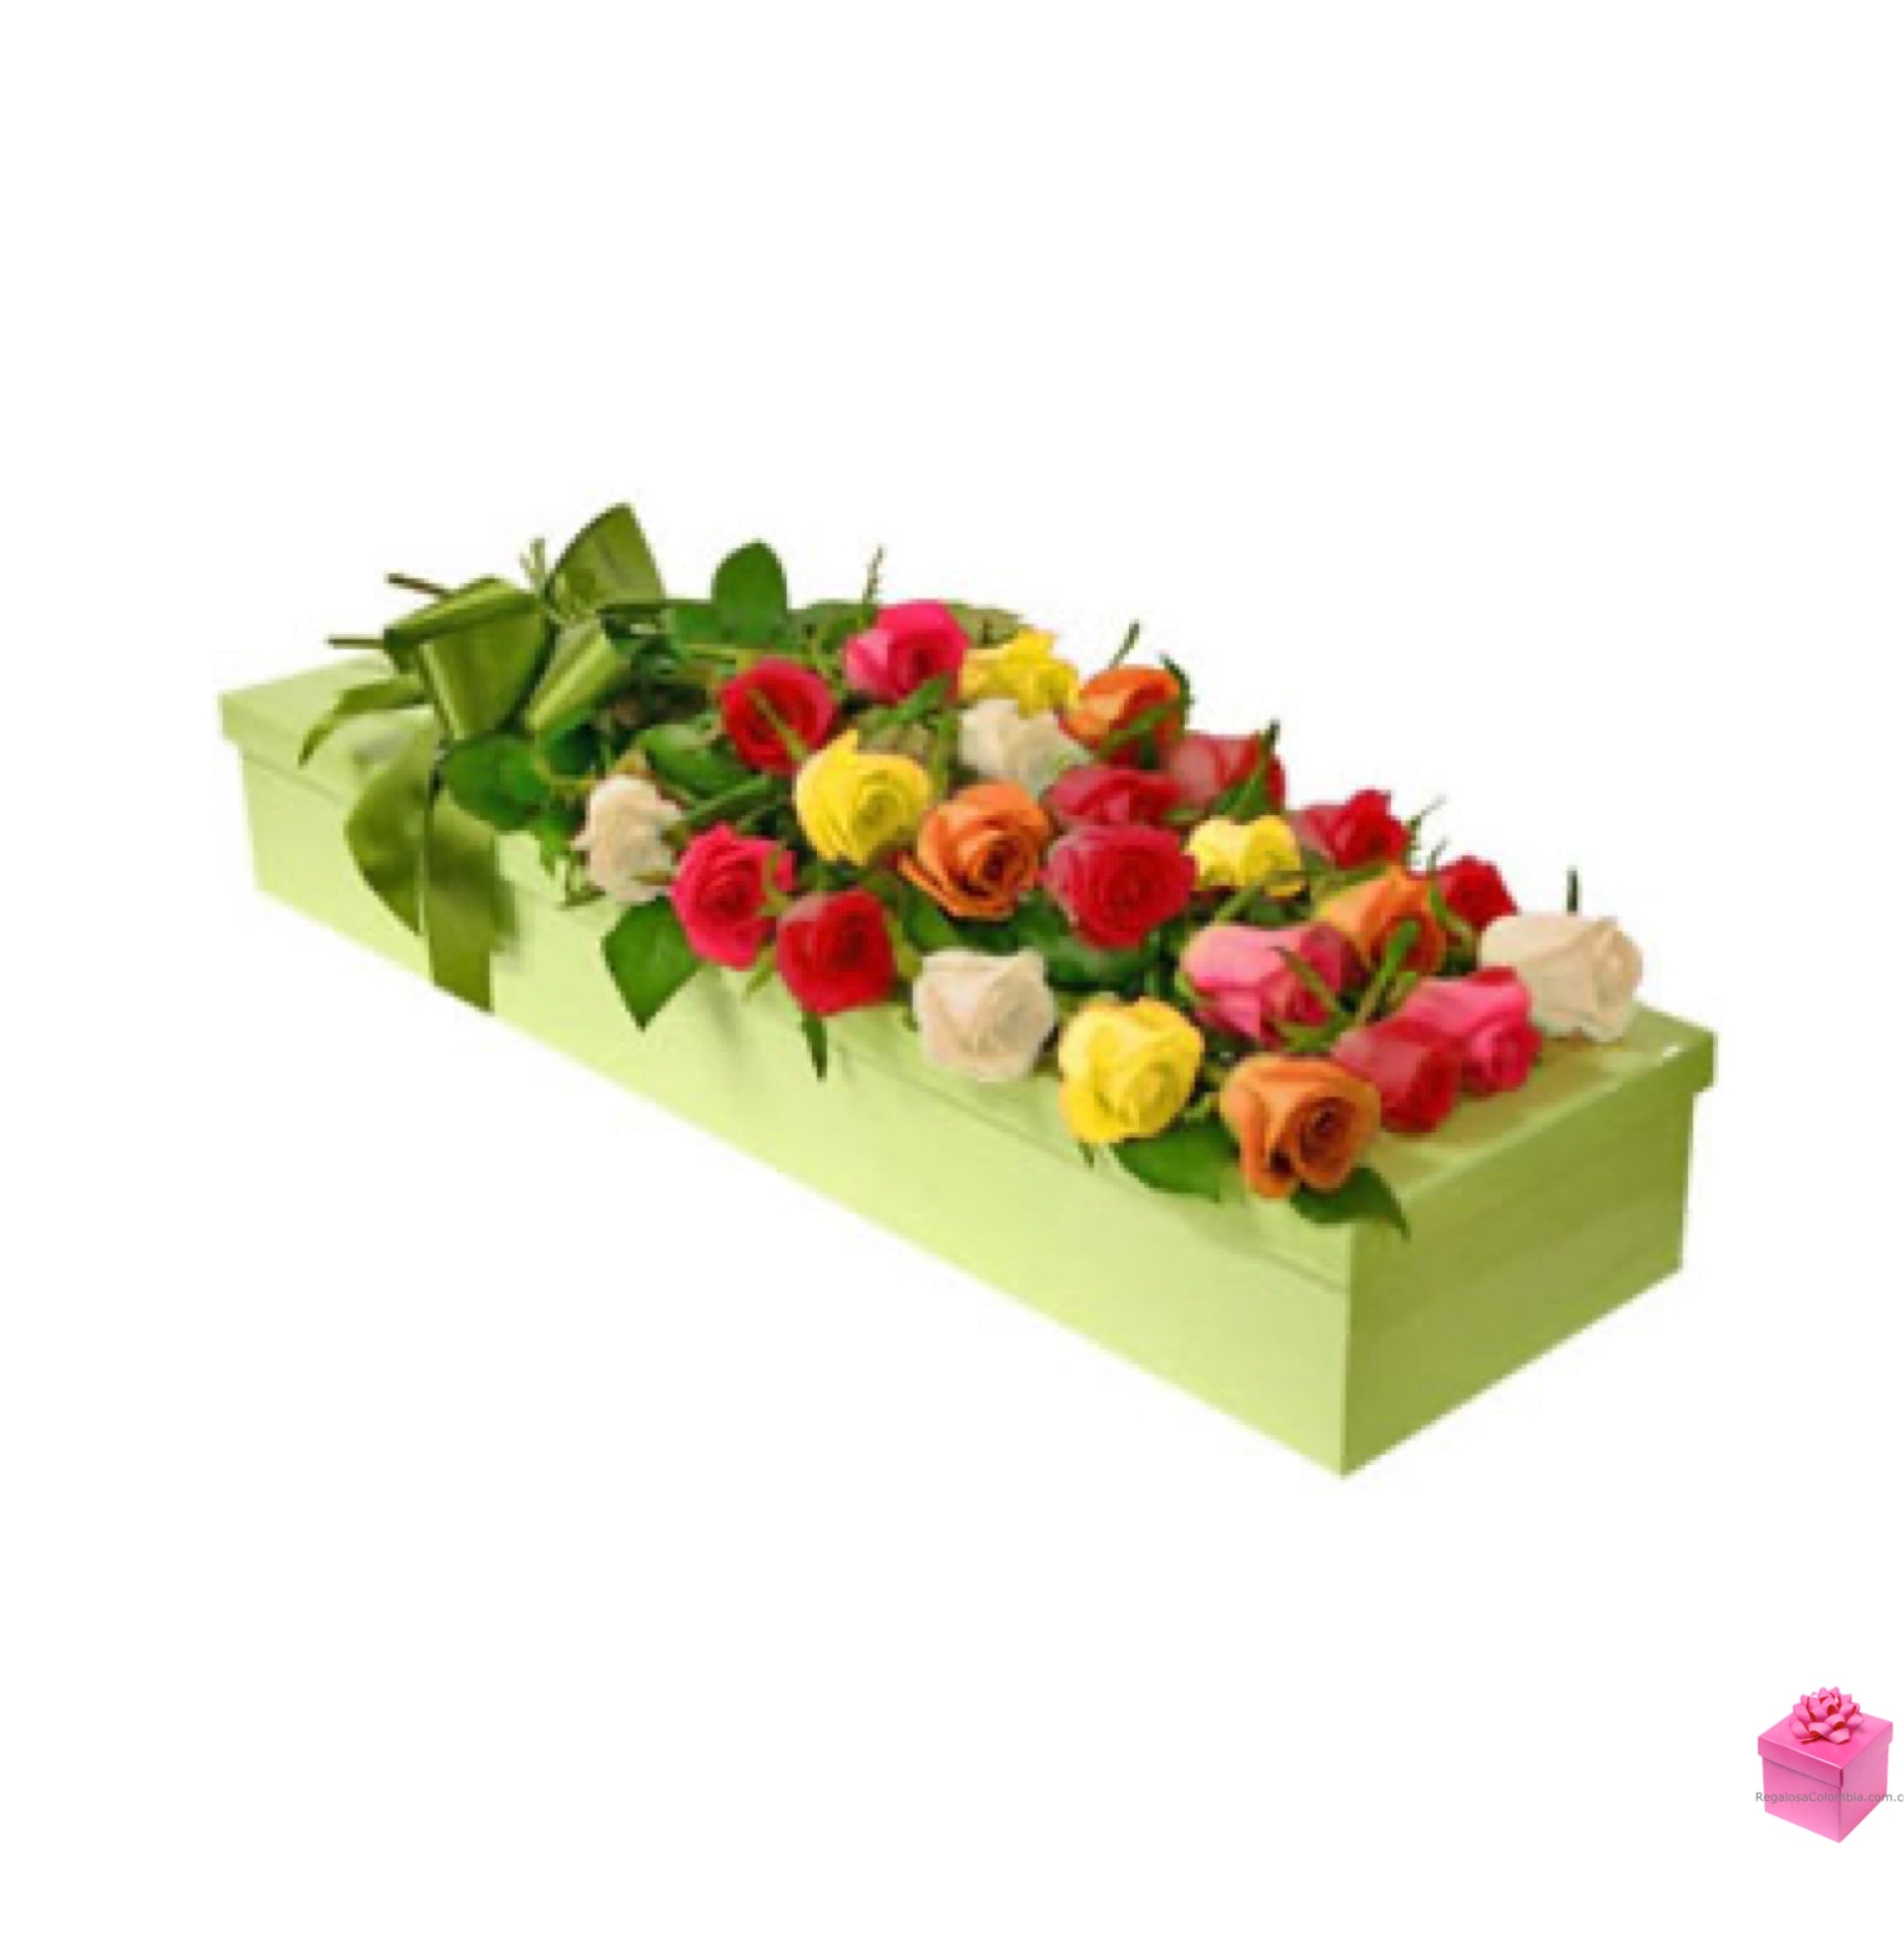 Dos Docenas de finas Rosas multicolor de tallo largo tipo exportación en Estuche decorativo. Incluye empaque, moño, tarjeta y entrega a domicilio.